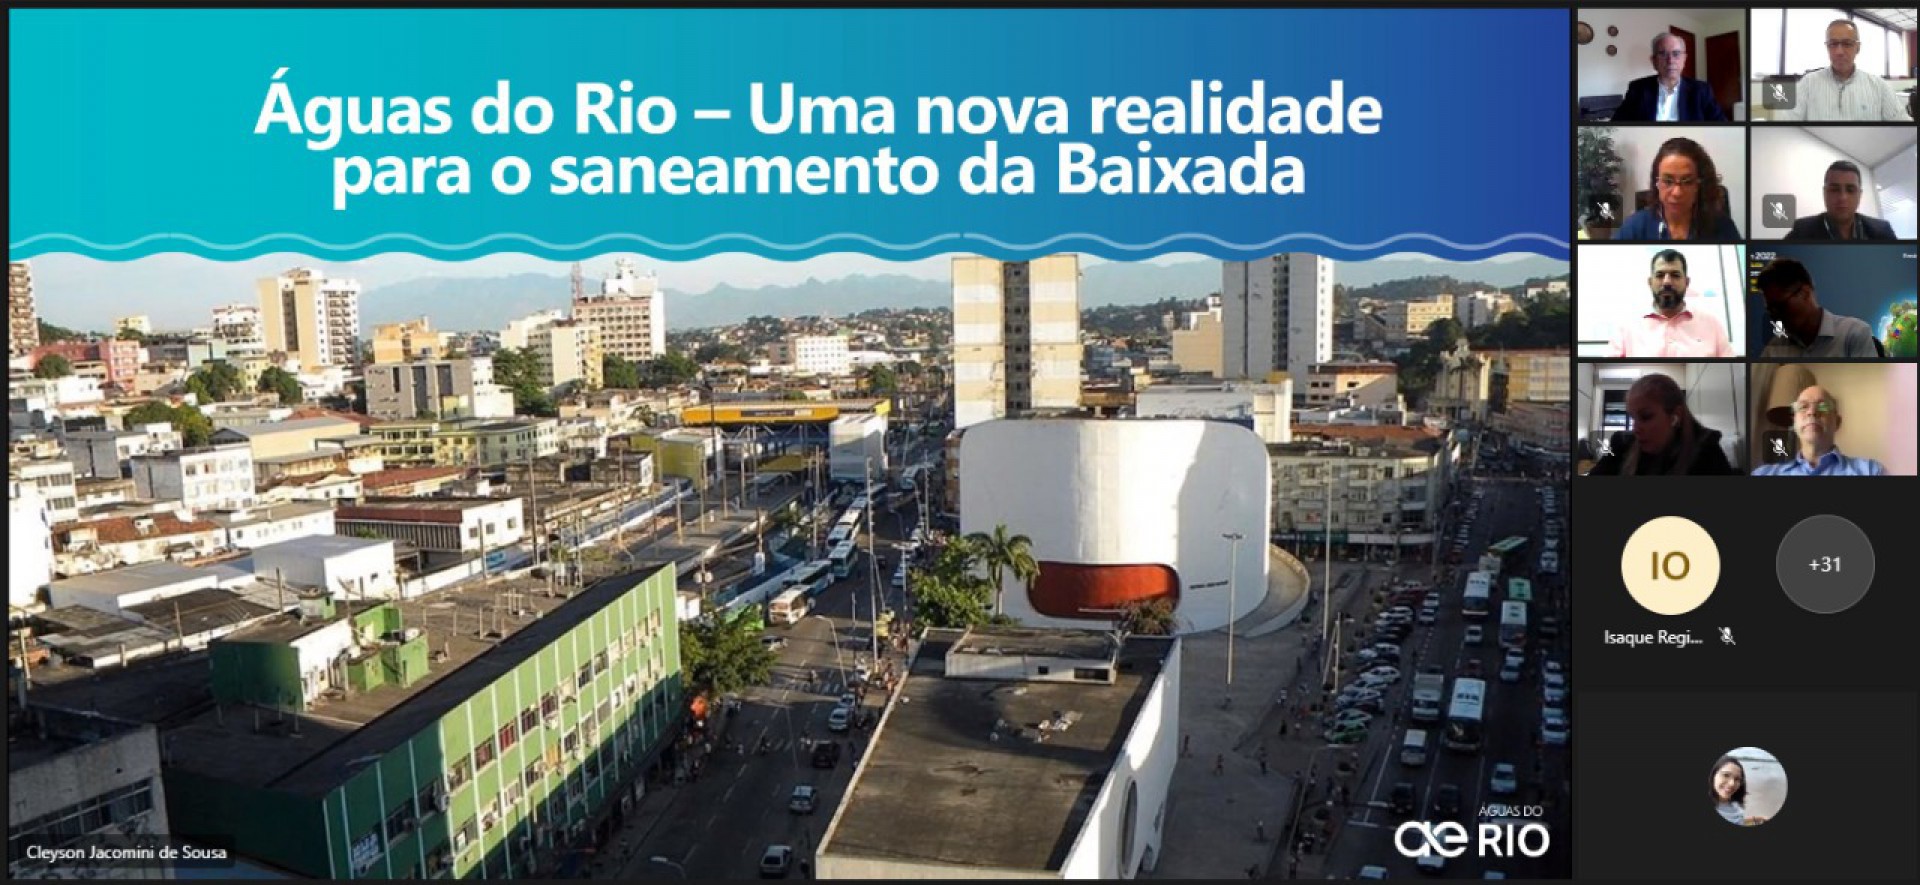 A Águas do Rio apresenta investimentos e ações em saneamento durante reunião - Divulgação